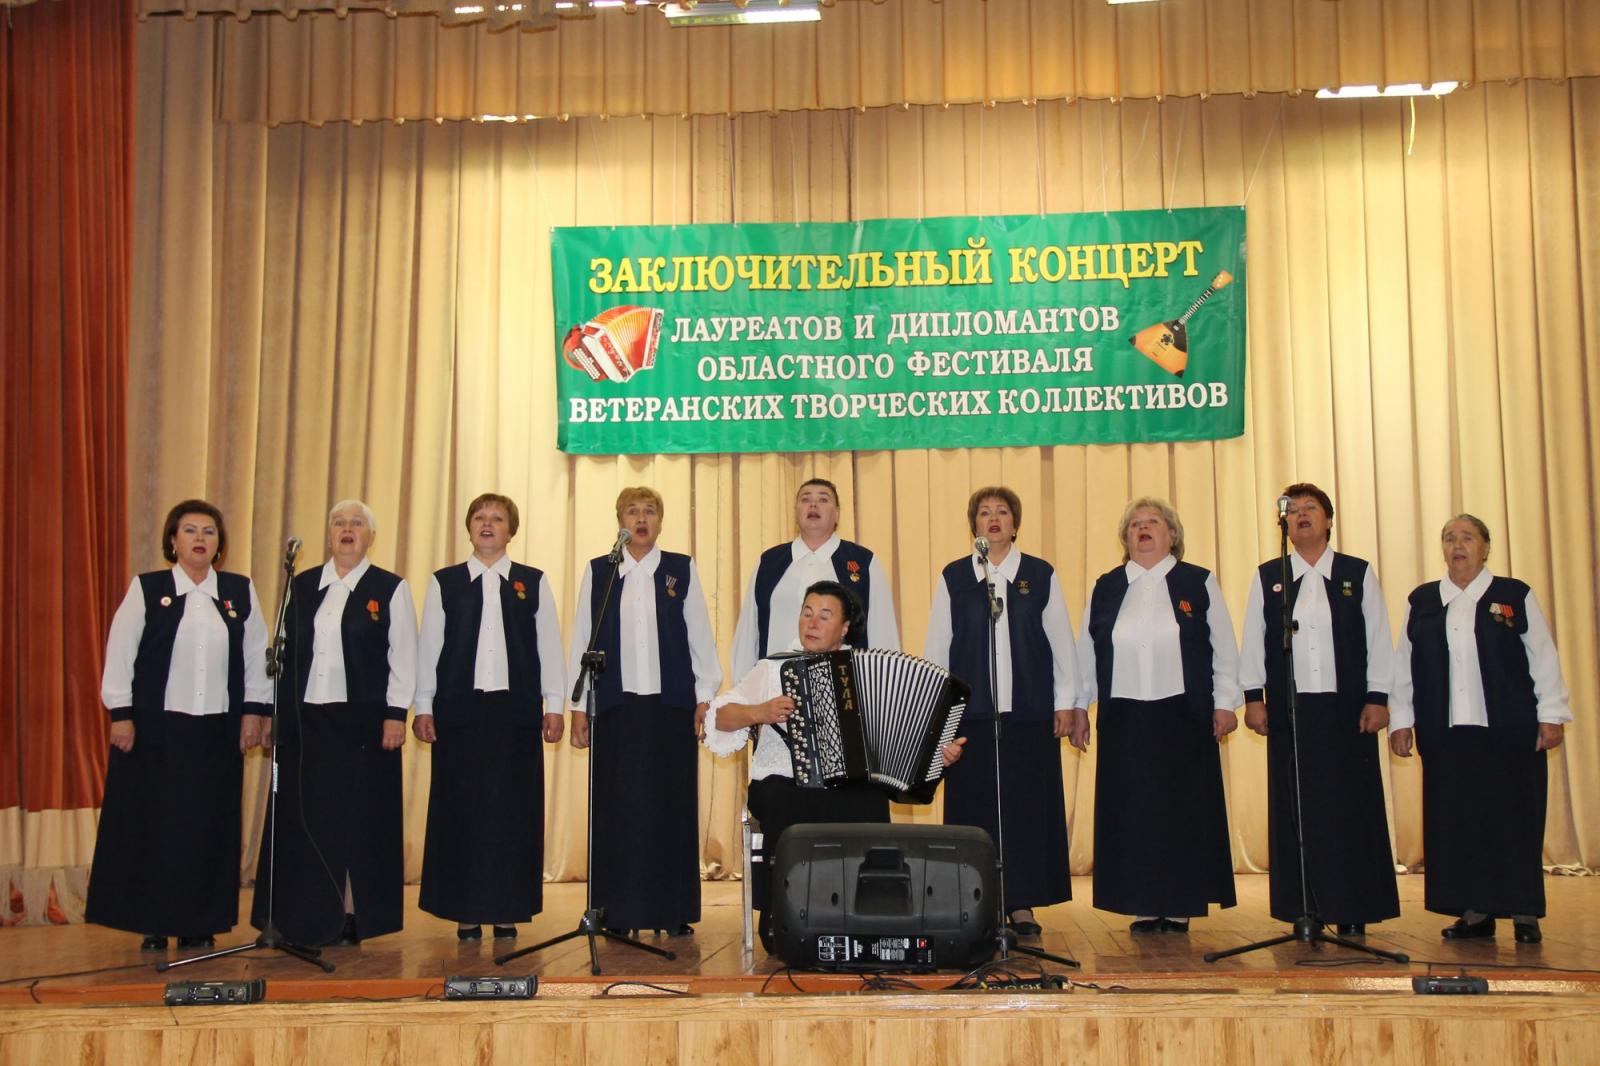 Заключительный концерт Лауреатов и Дипломантов V областного фестиваля ветеранских творческих коллективов состоялся в городе Орле